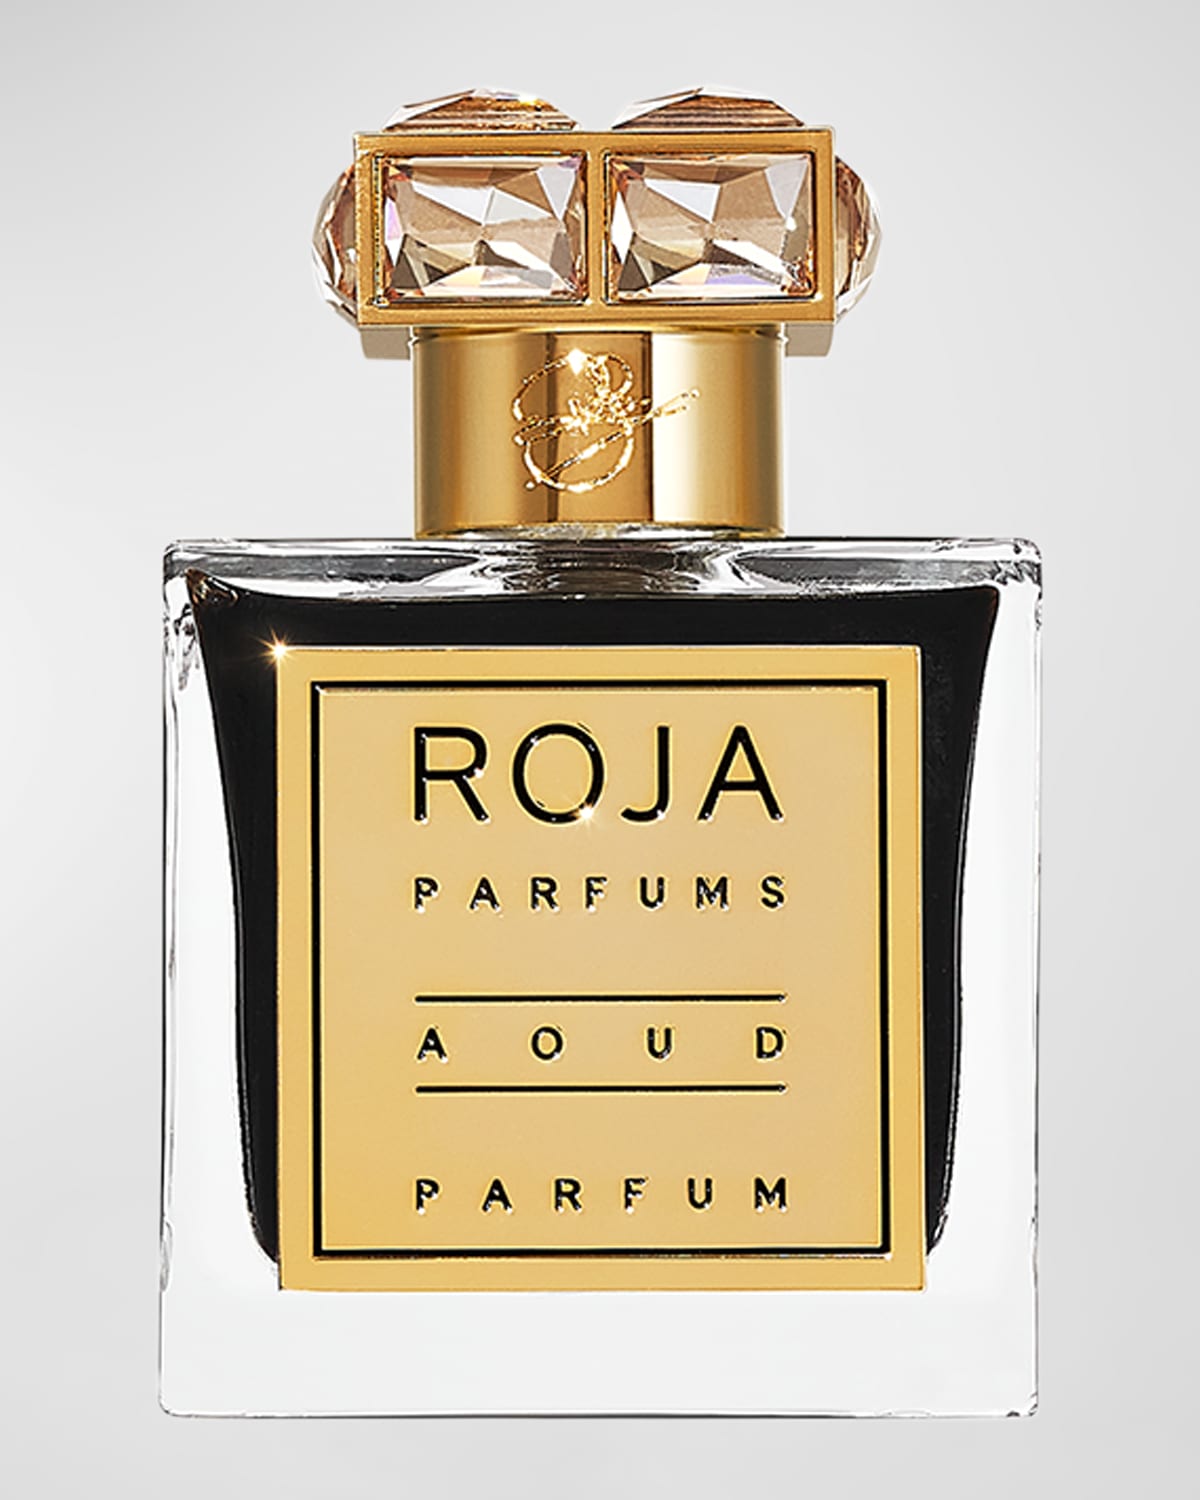 Aoud Parfum, 3.4 oz.